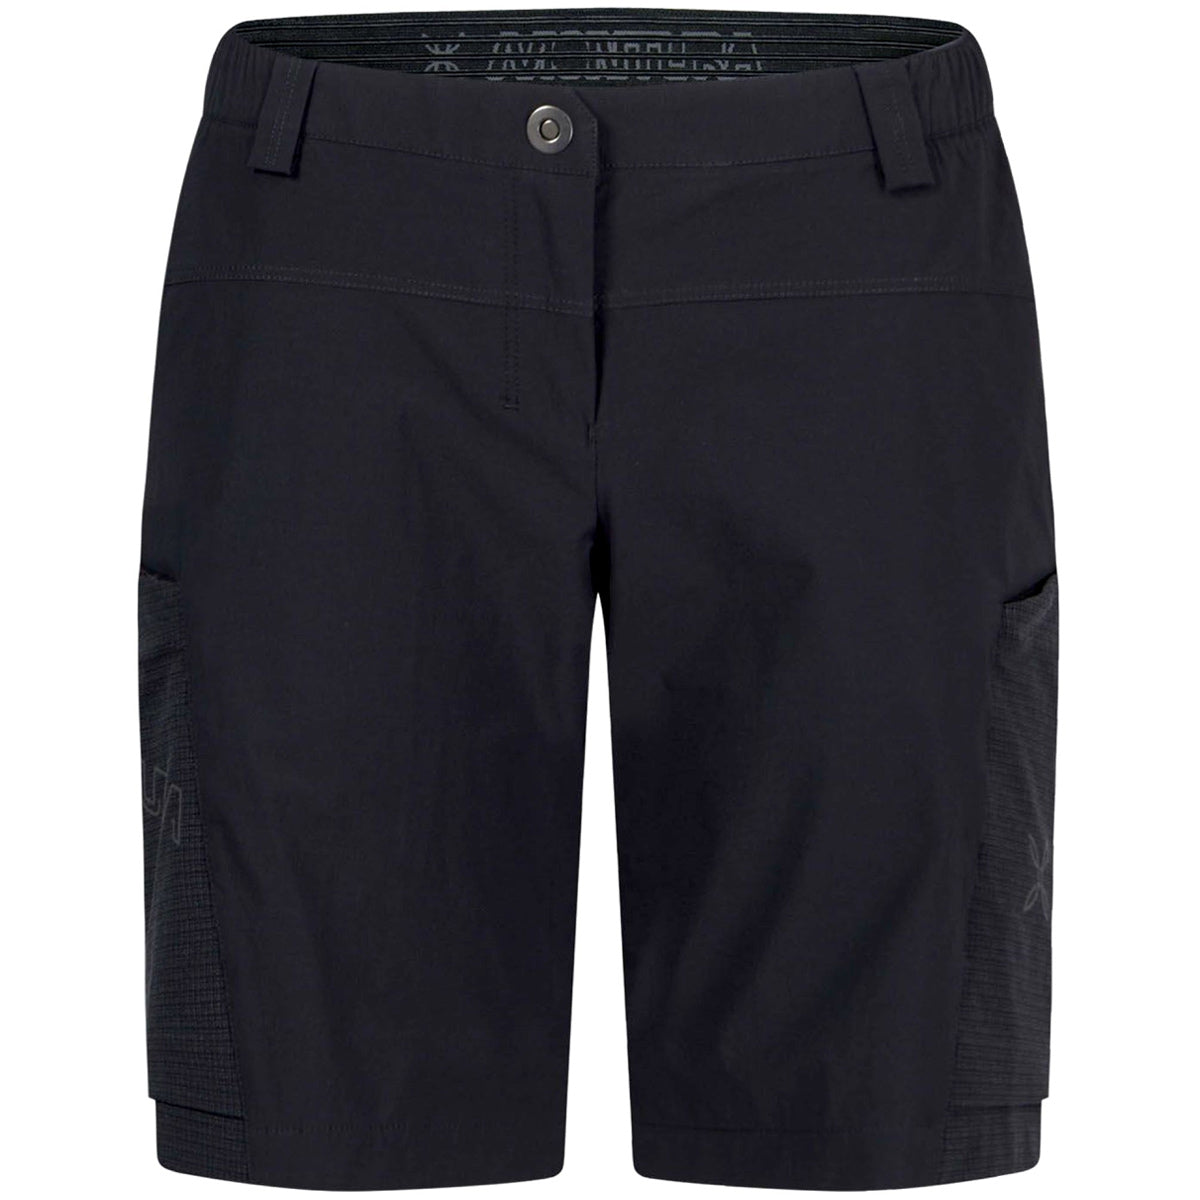 Montura Land shorts - Black | All4cycling